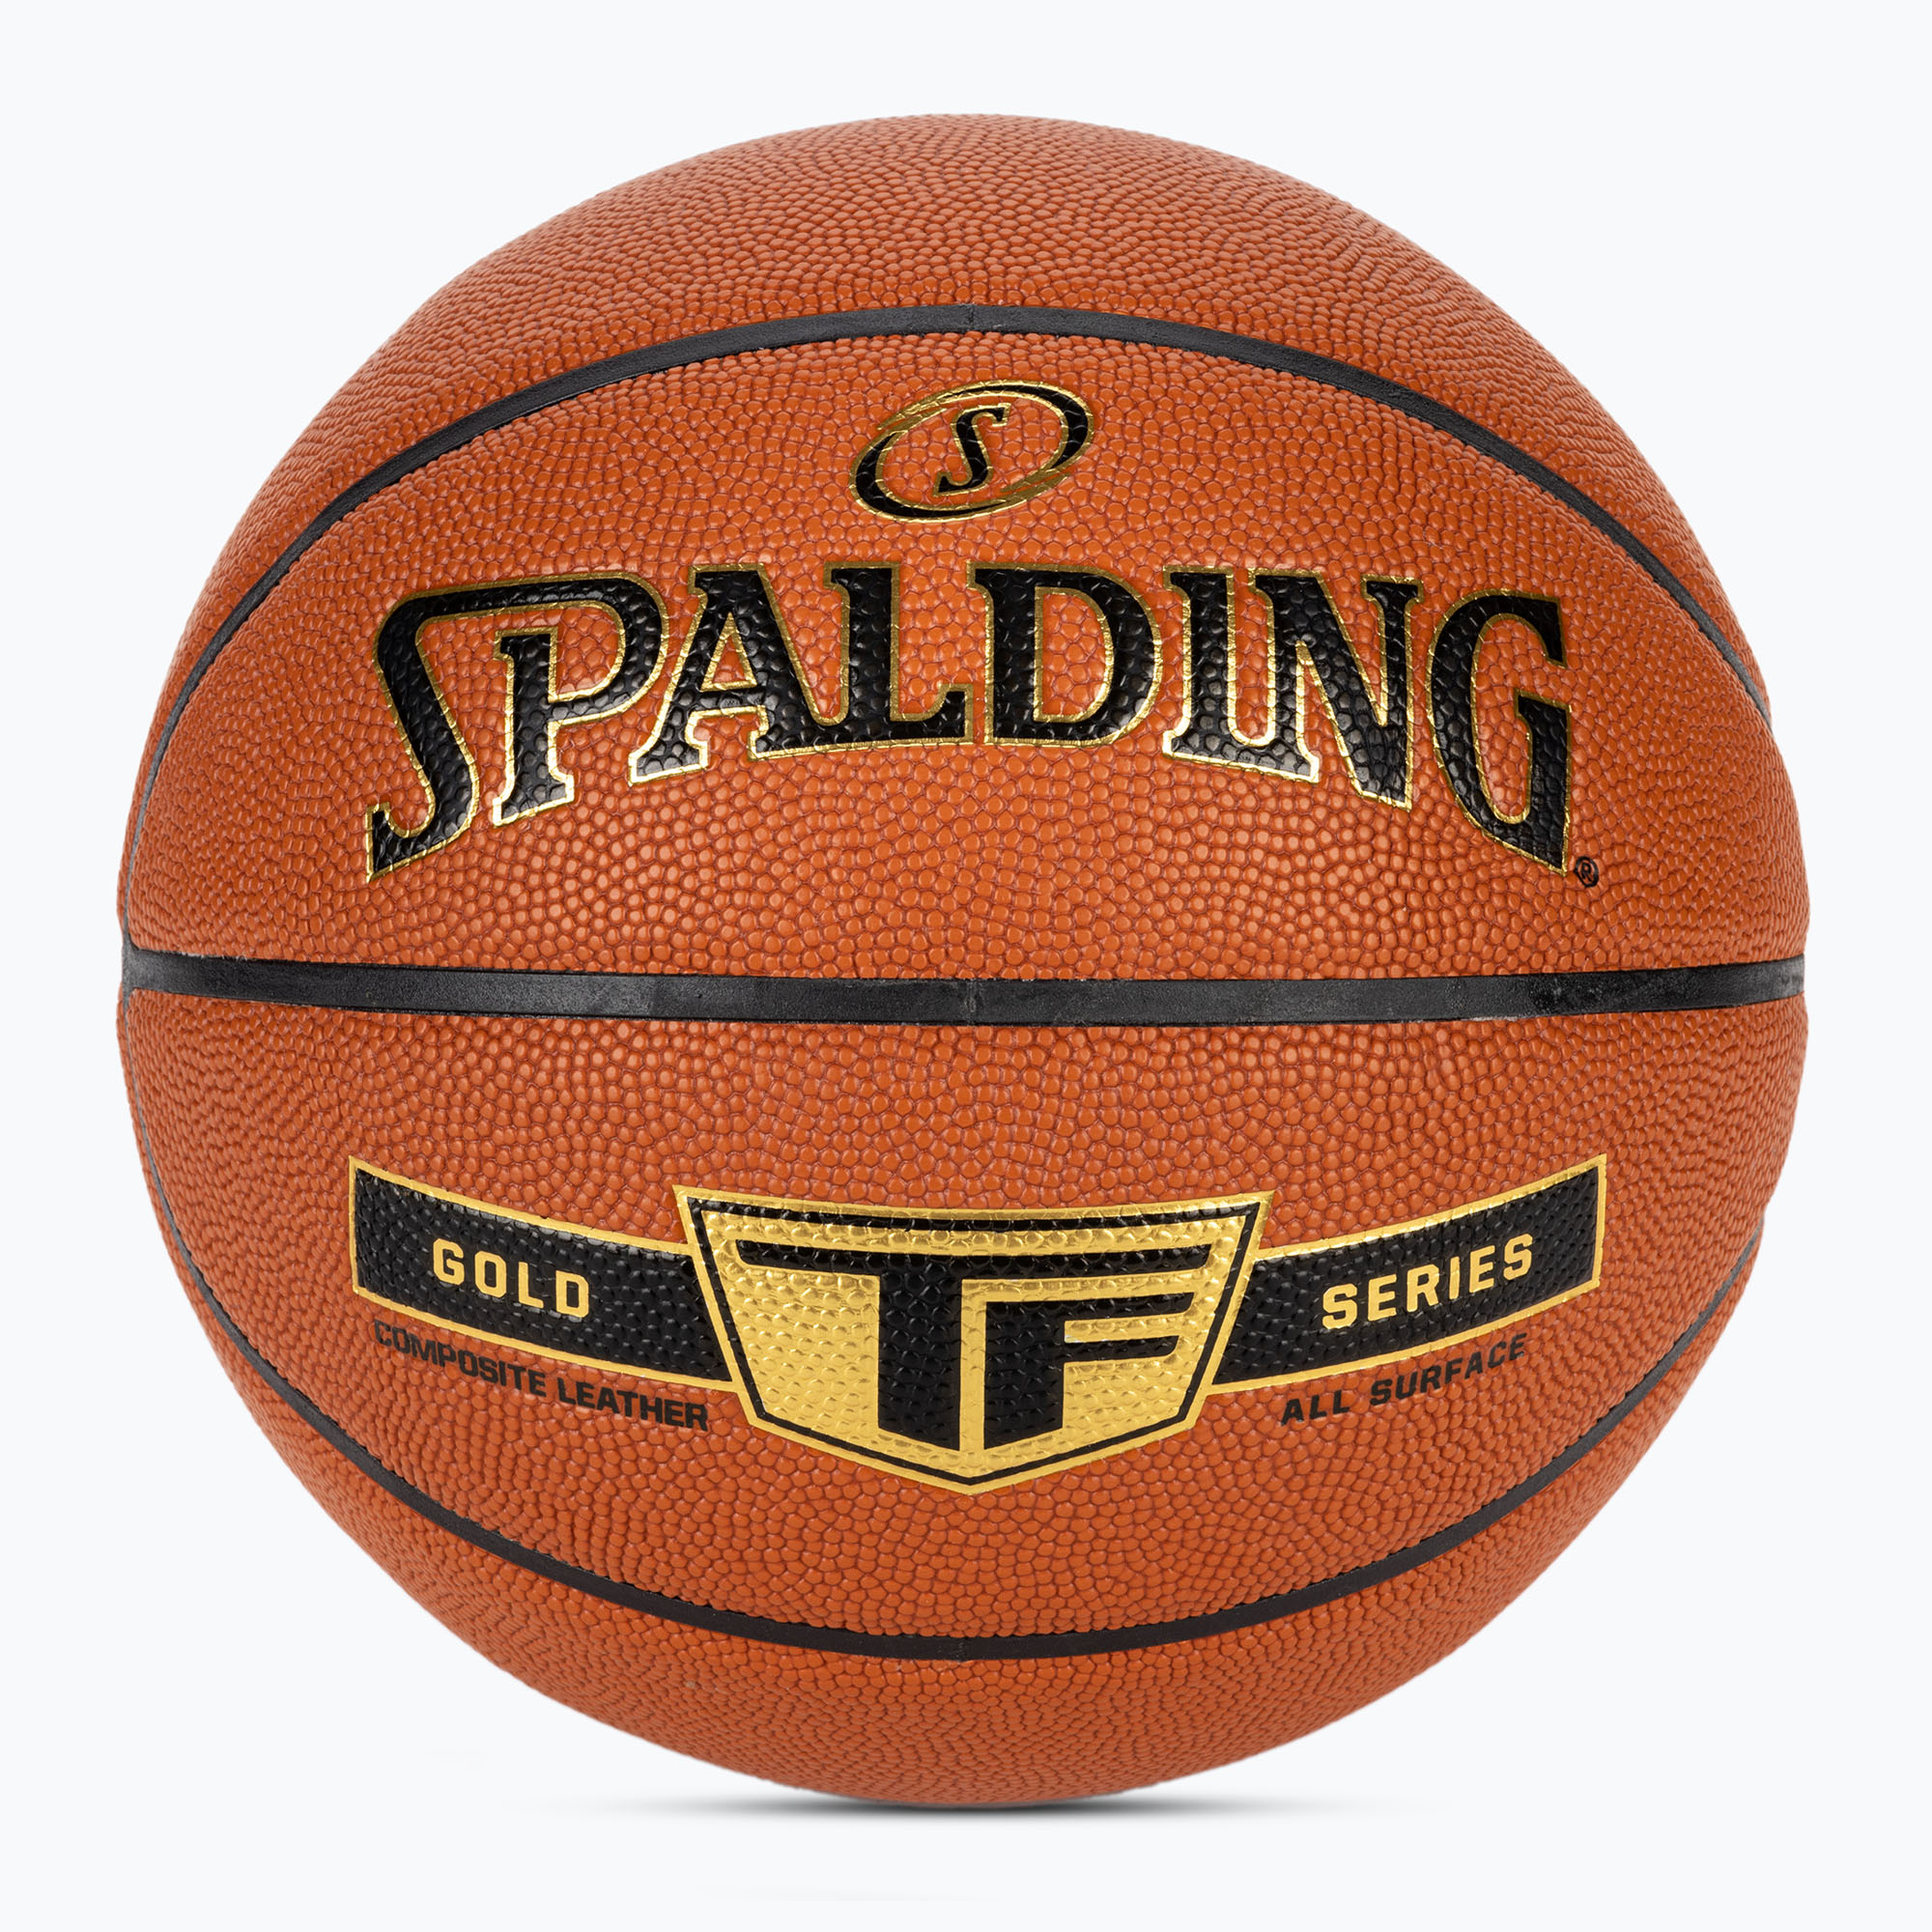 Spalding TF Gold баскетбол 76858Z размер 6